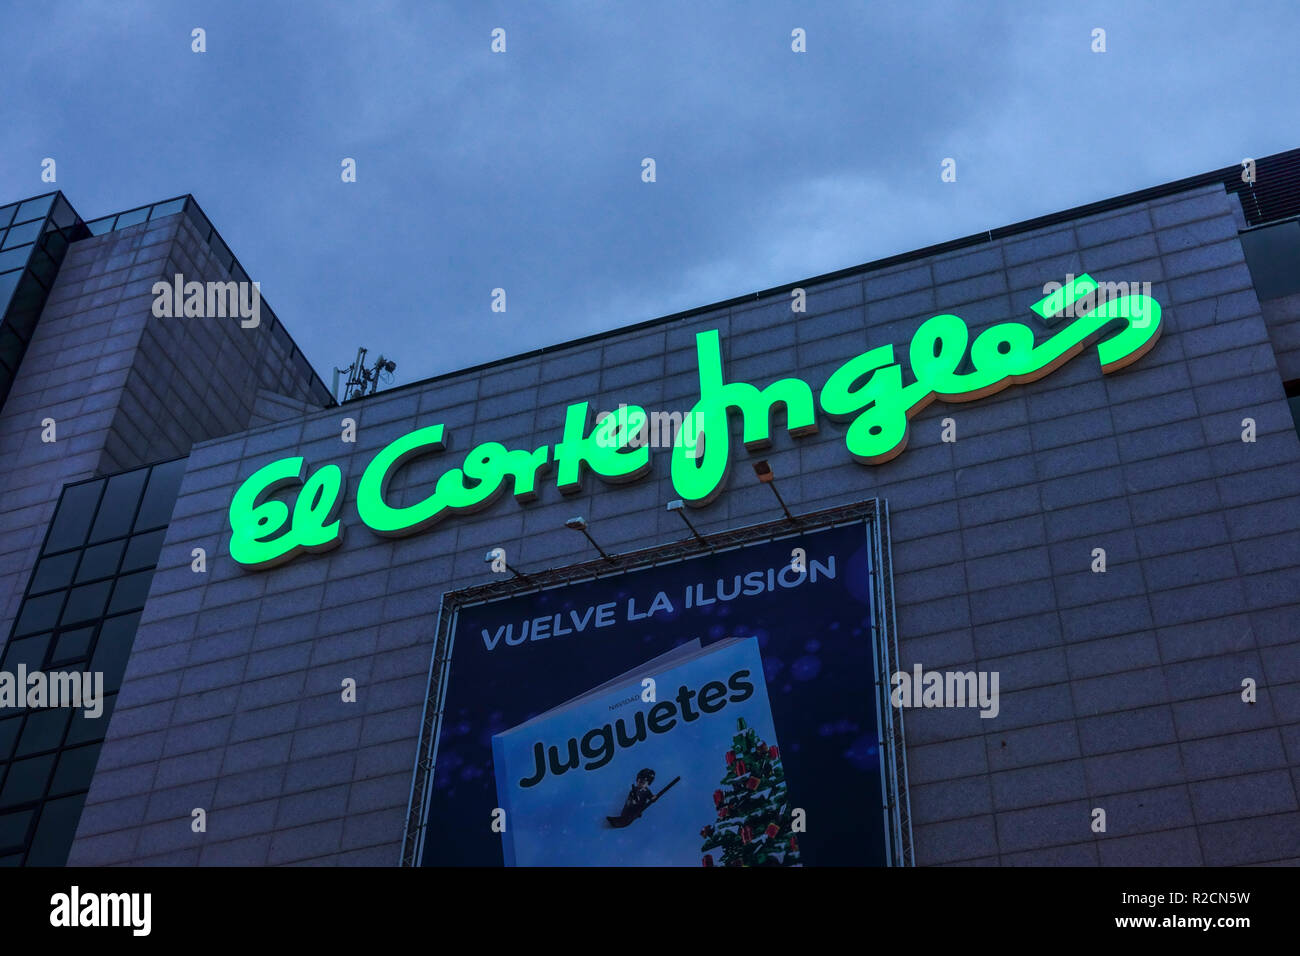 El Corte Ingles, Shopping Centre, Alicante, Spain Stock Photo